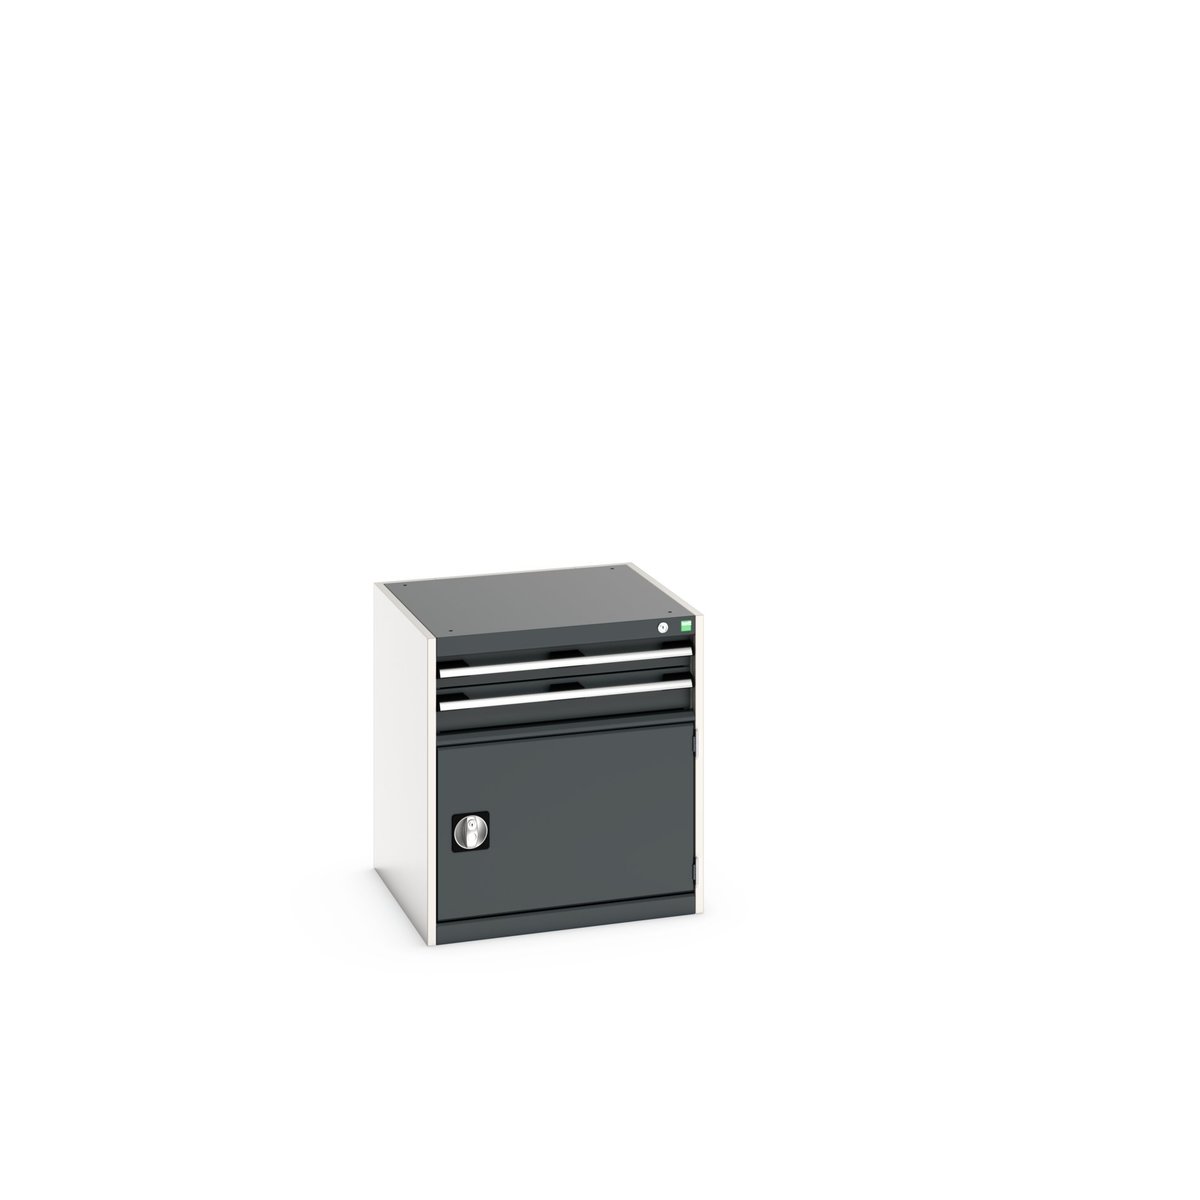 40019021. - cubio drawer-door cabinet